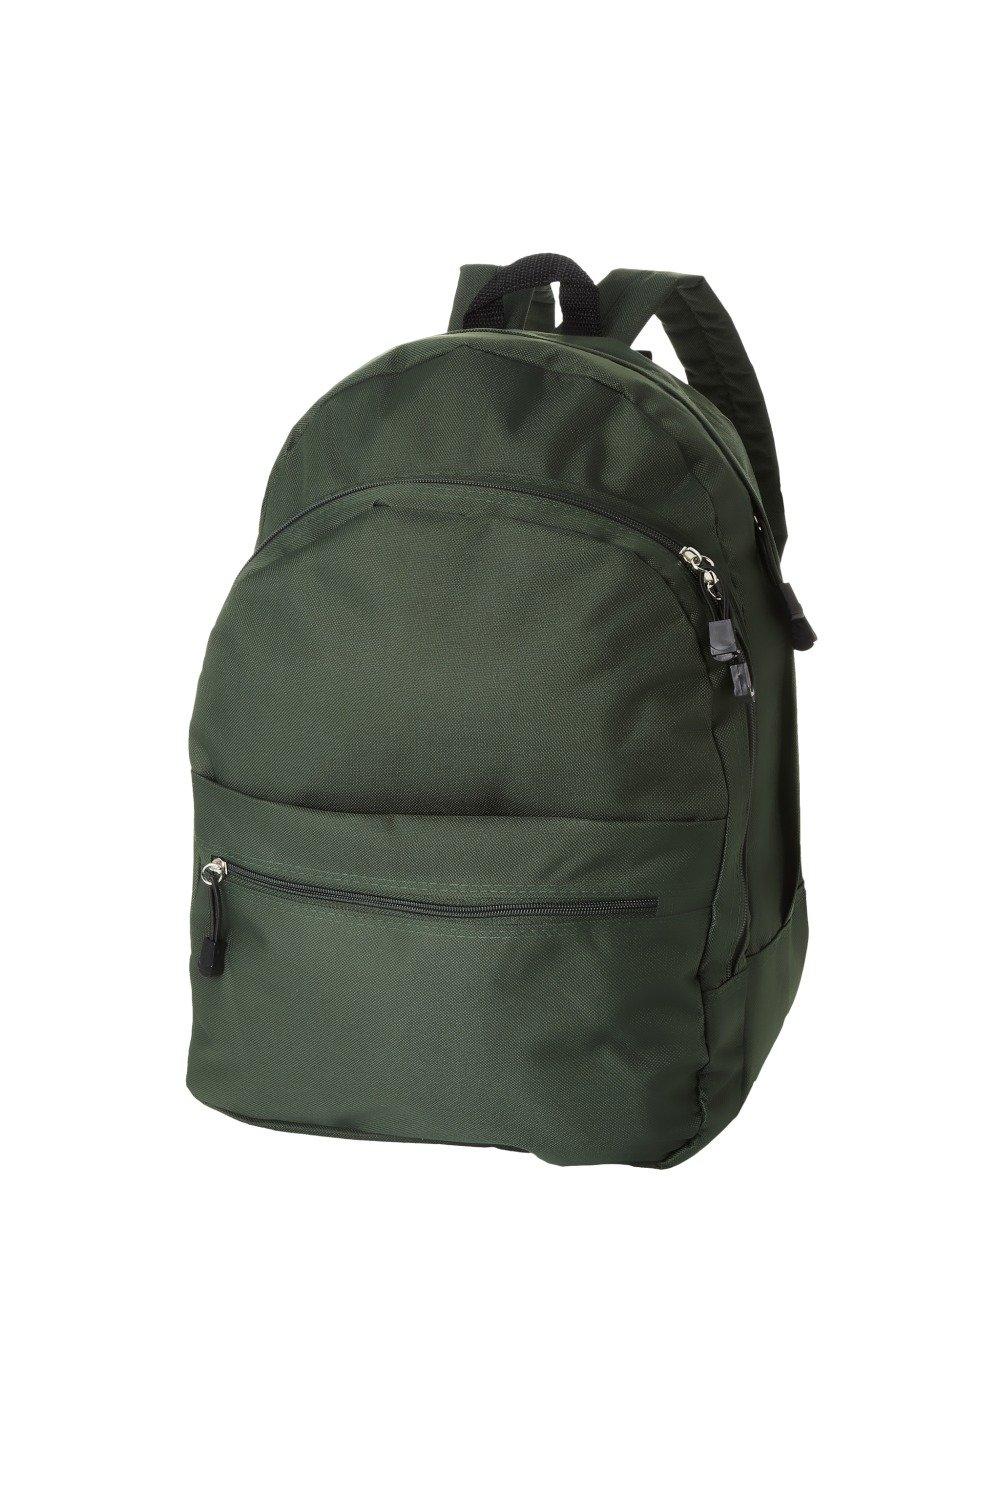 Трендовый рюкзак Bullet, зеленый рюкзак с карманом единорог